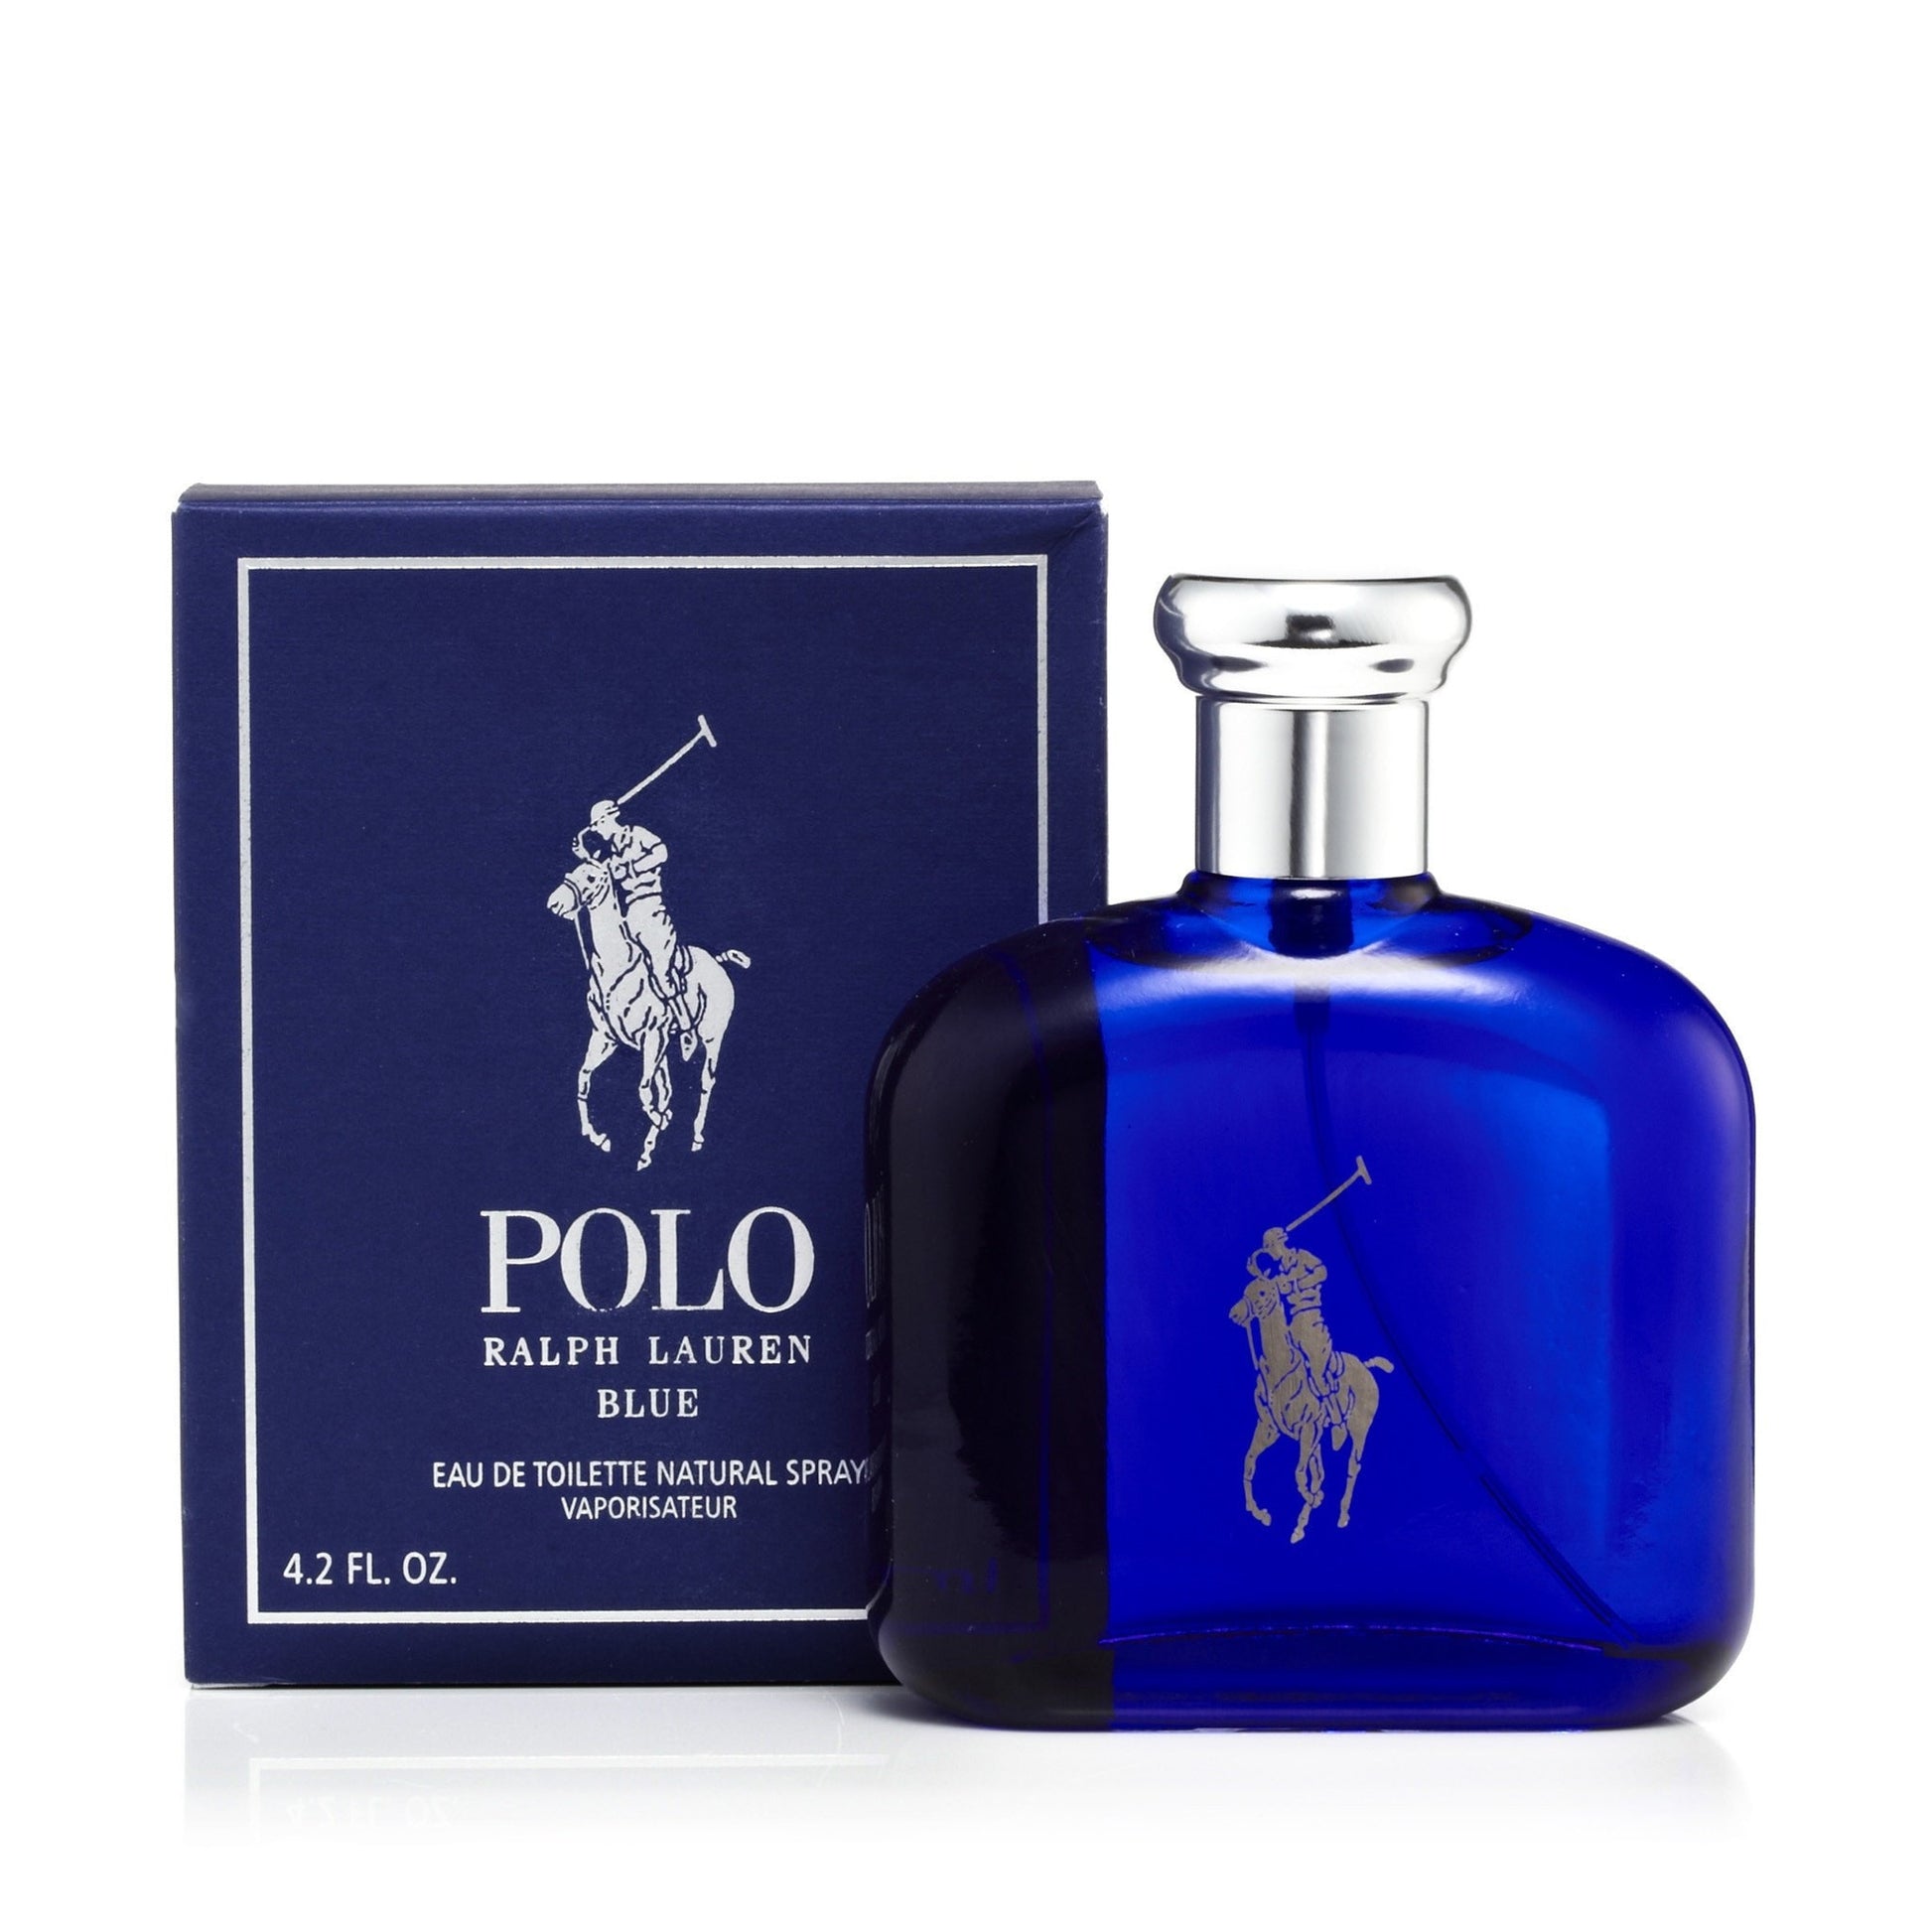 Polo Sport by Ralph Lauren Men's Fragrances for sale